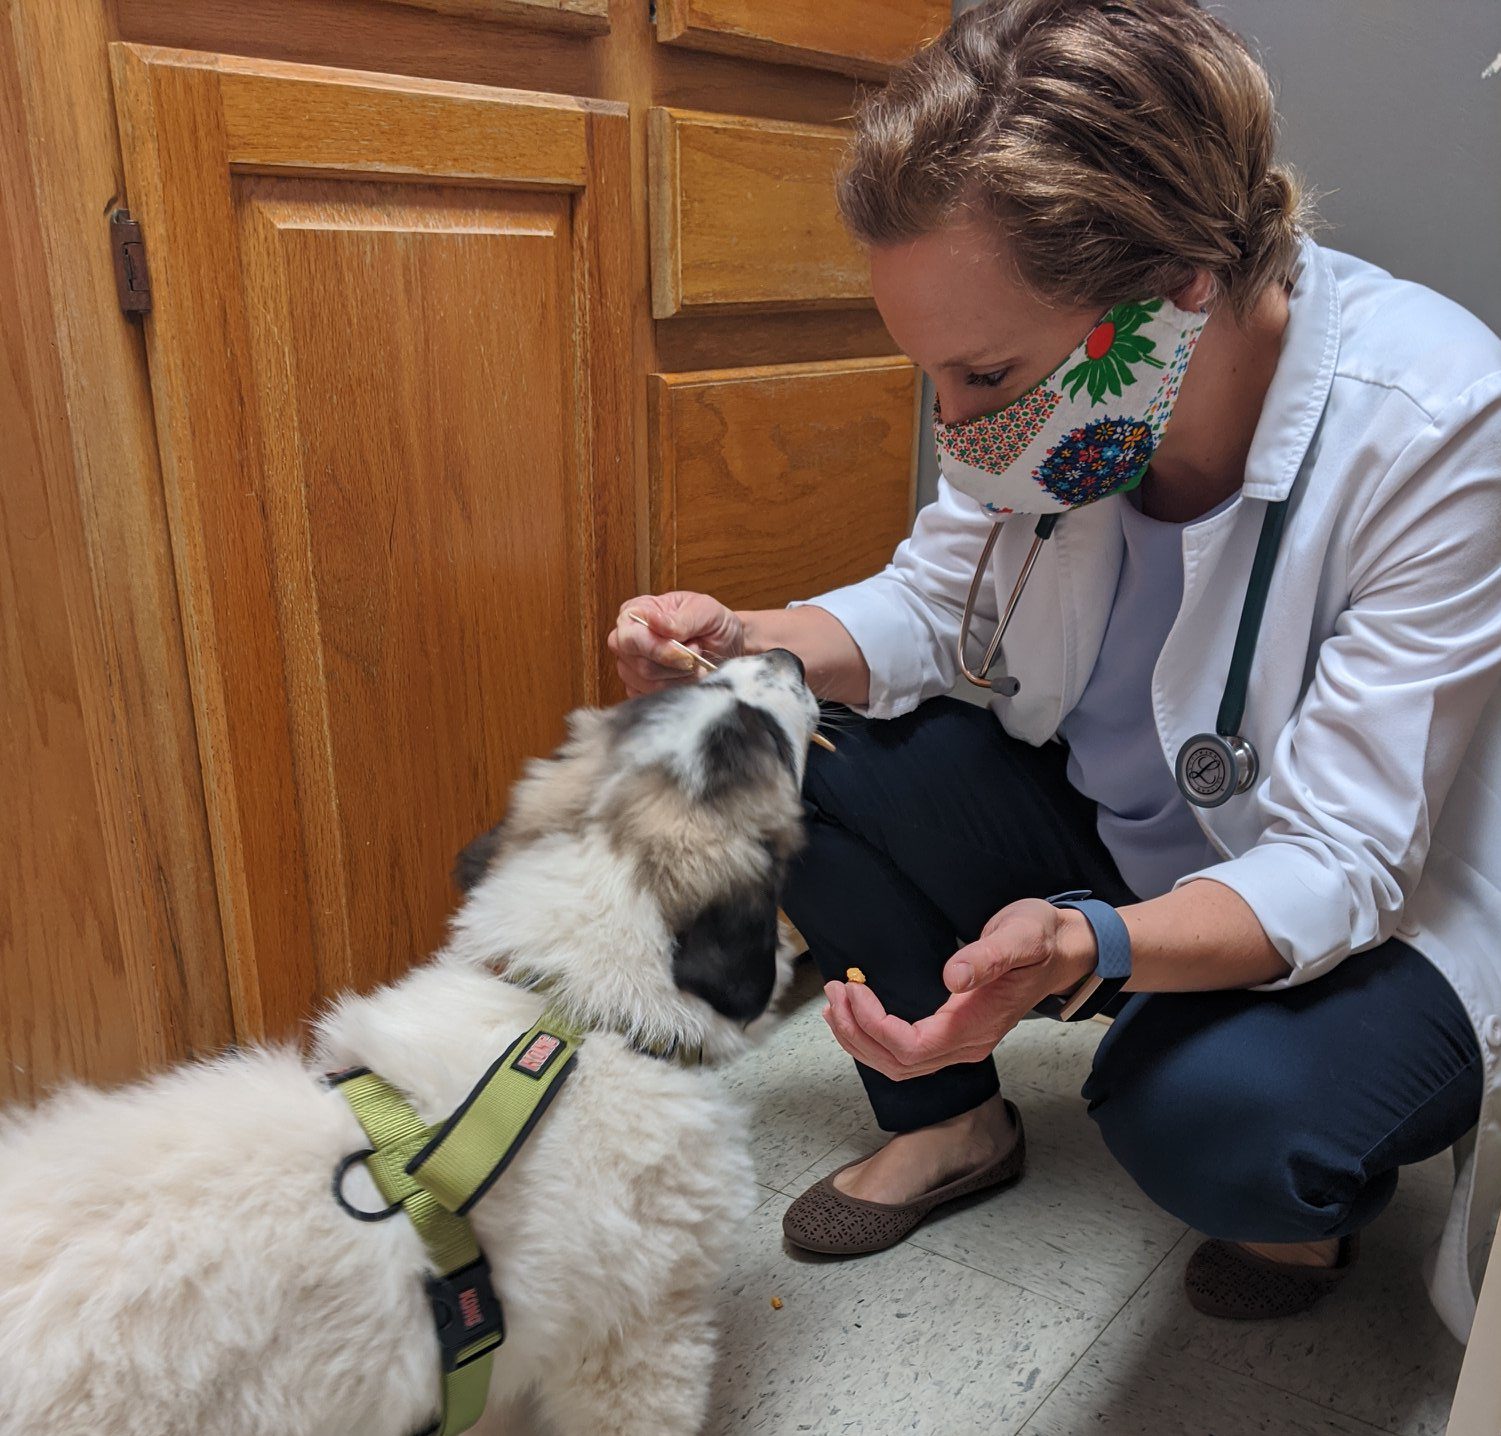 Dr Beckner giving a dog a treat